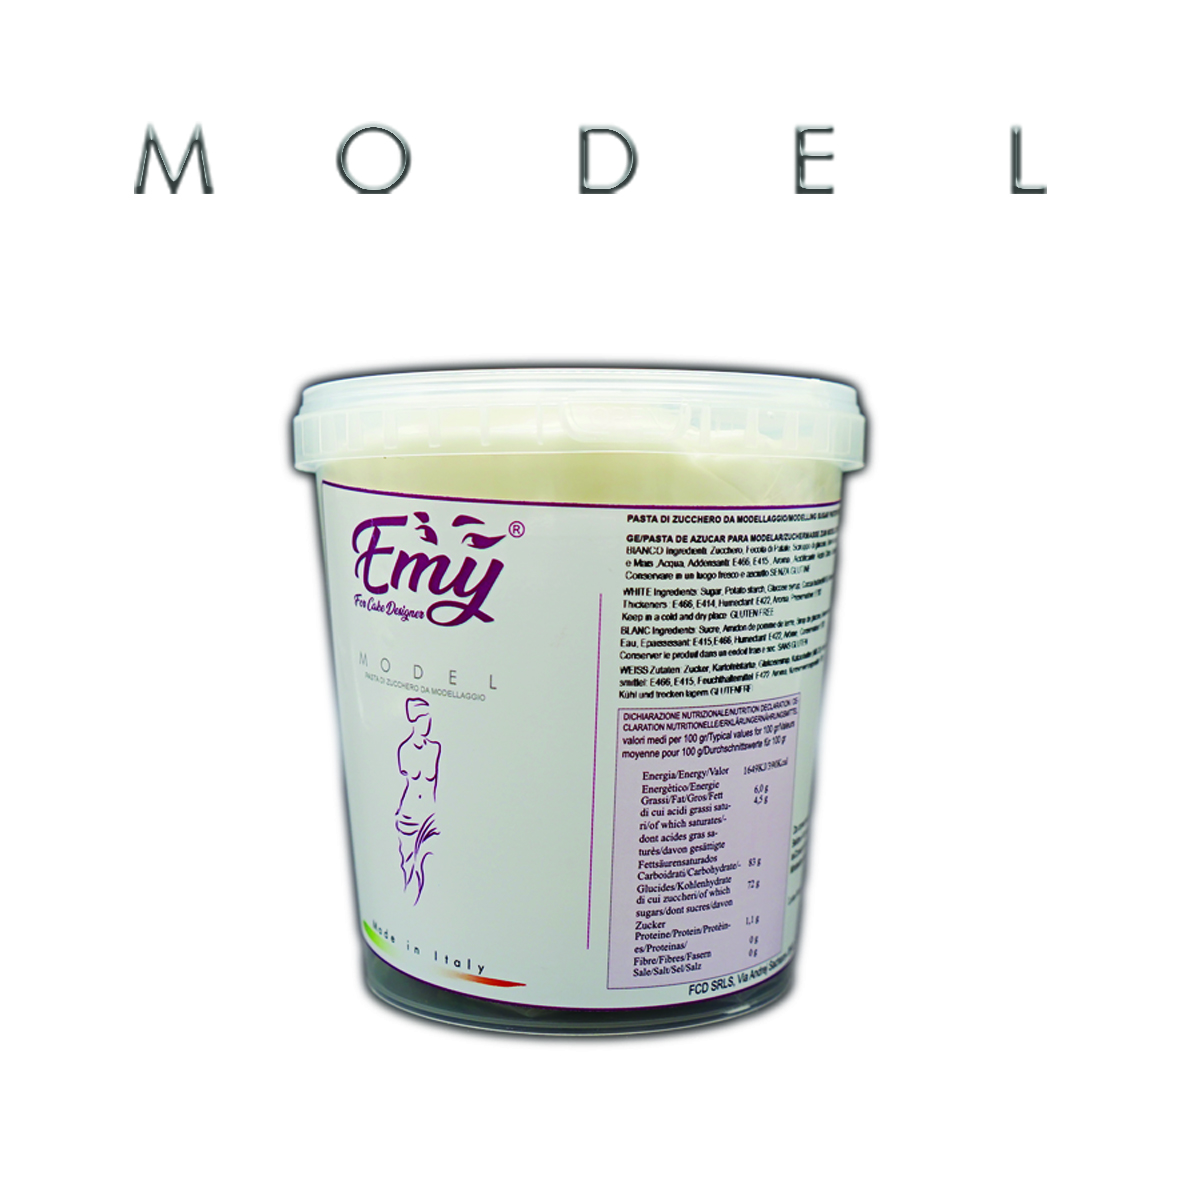  Foto: For Cake Designer - Emy Model bianca 1 kg